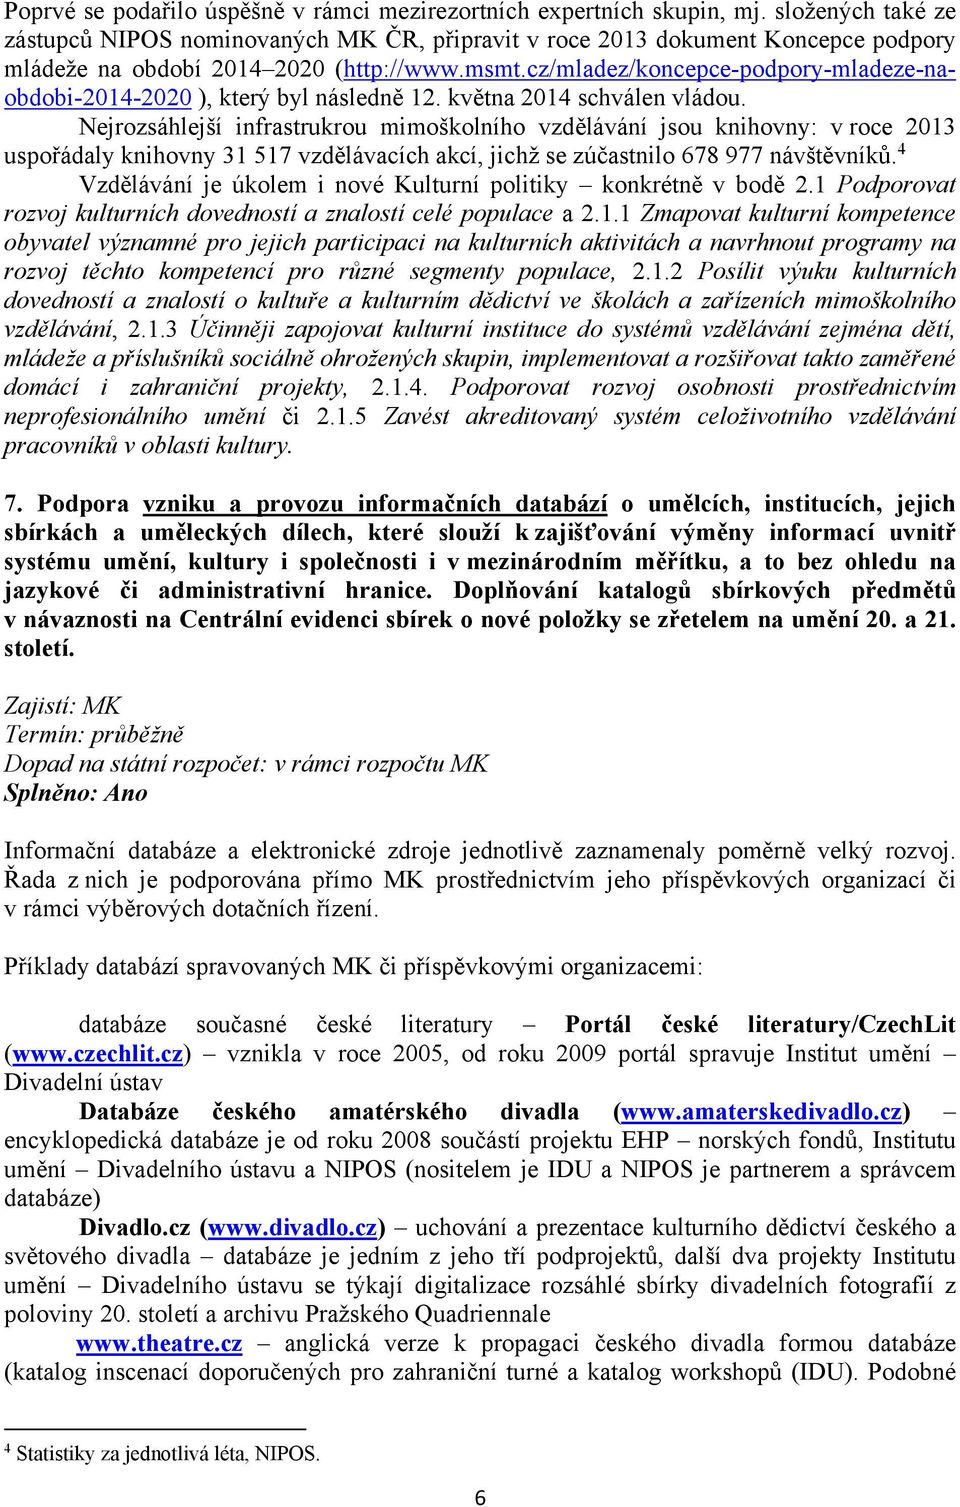 cz/mladez/koncepce-podpory-mladeze-naobdobi-2014-2020 ), který byl následně 12. května 2014 schválen vládou.